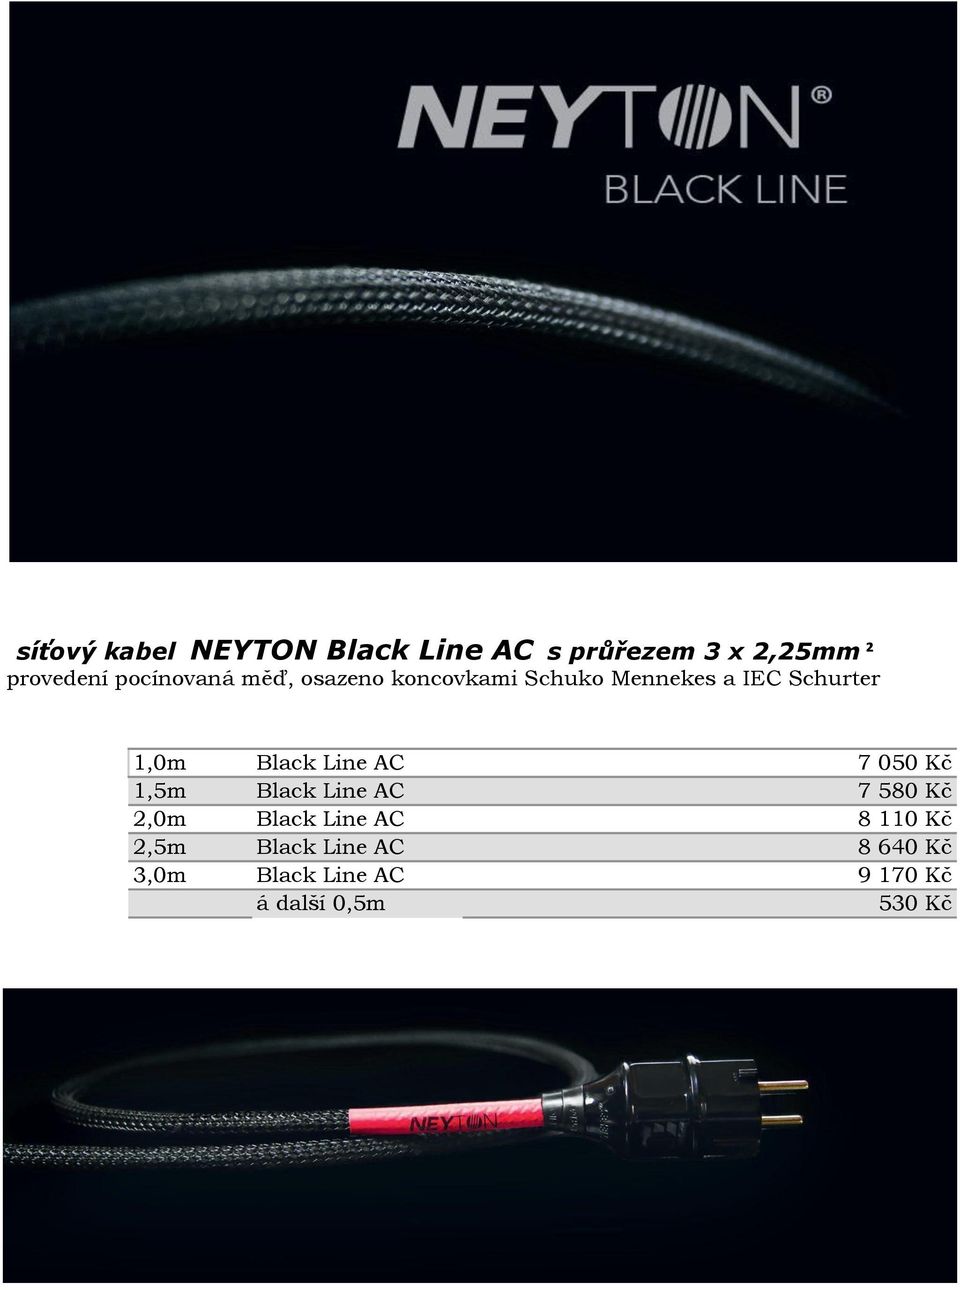 Black Line AC 7 050 Kč 1,5m Black Line AC 7 580 Kč 2,0m Black Line AC 8